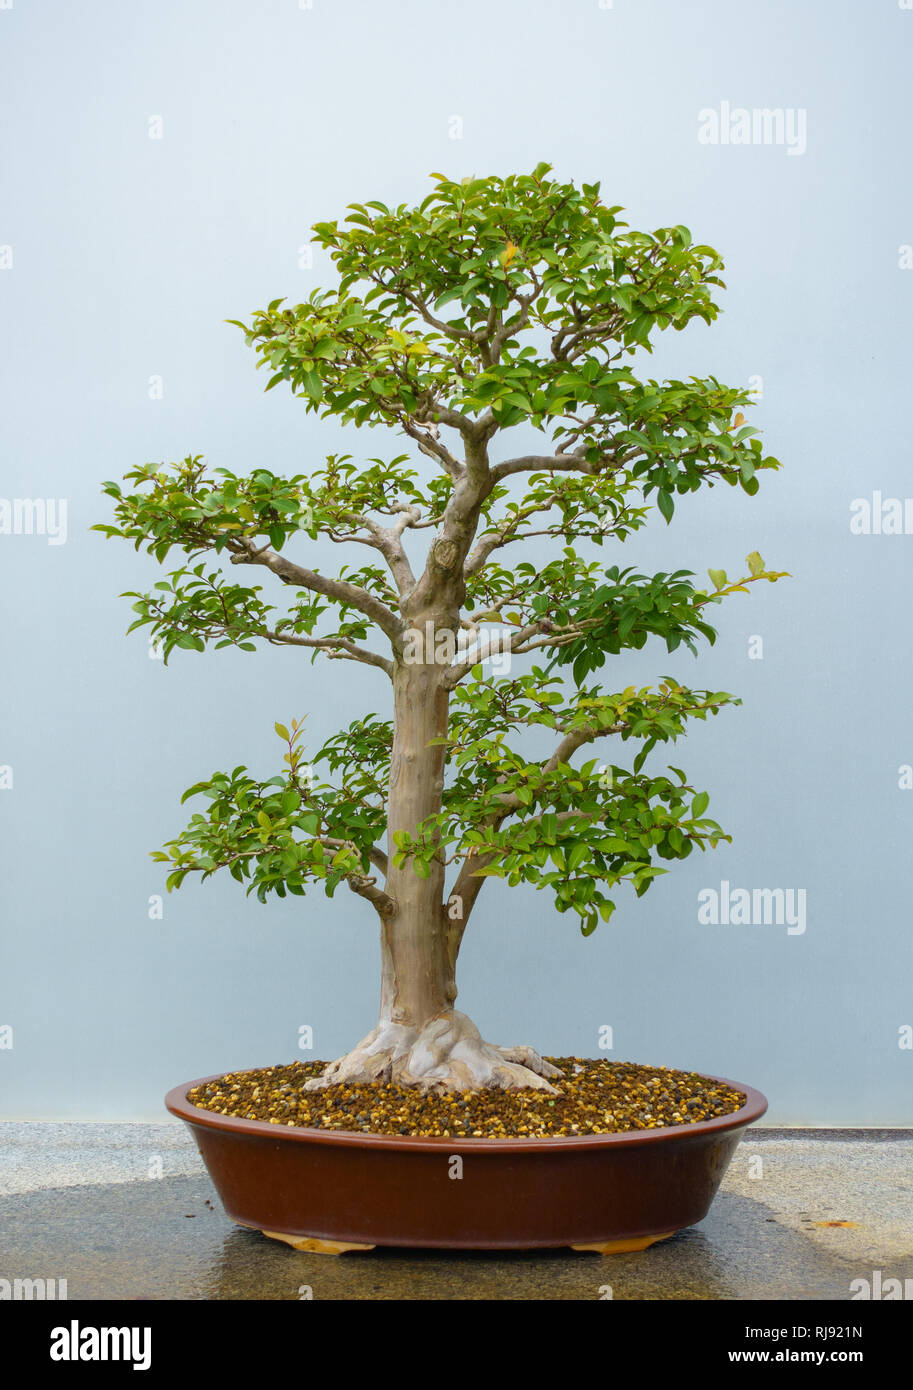 Bonsai tree around 60-70 years old Stock Photo